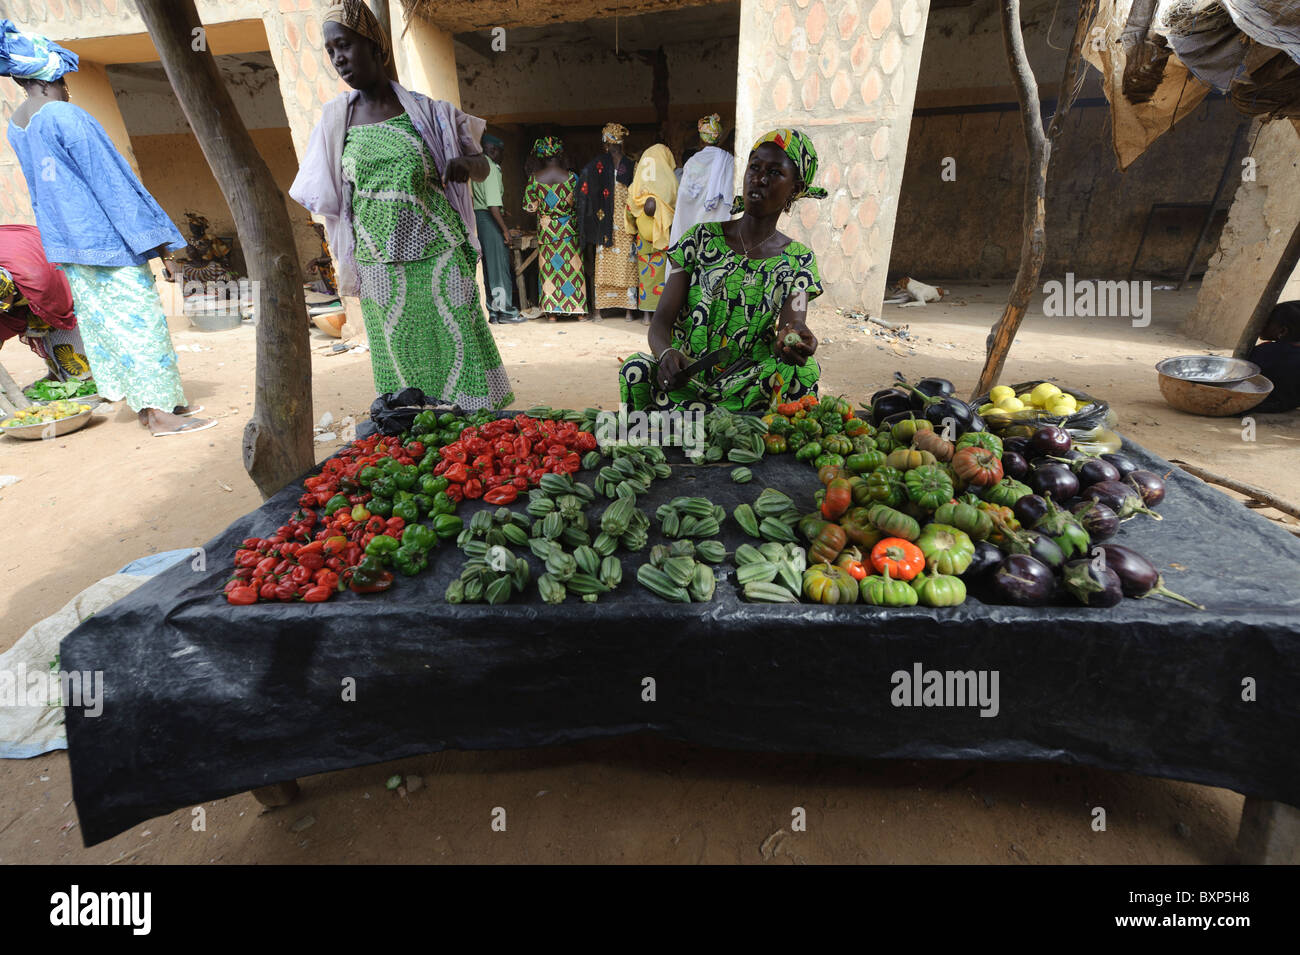 Market scene on the Petit Marchée ( small market) of Djenné, Mali Stock Photo